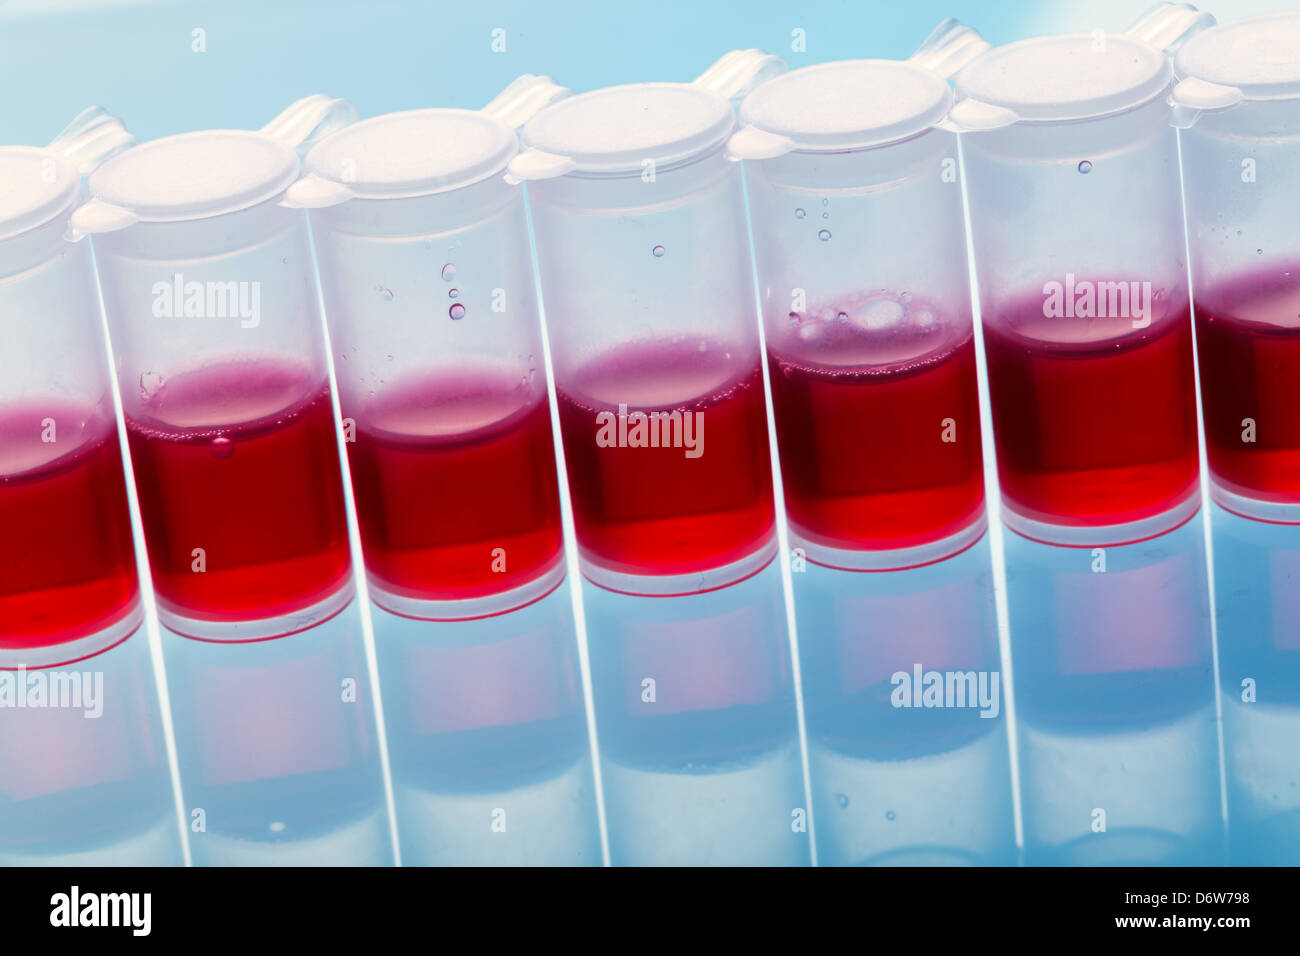 Testen das Medikament auf der Grundlage von Stammzellen Stockfoto